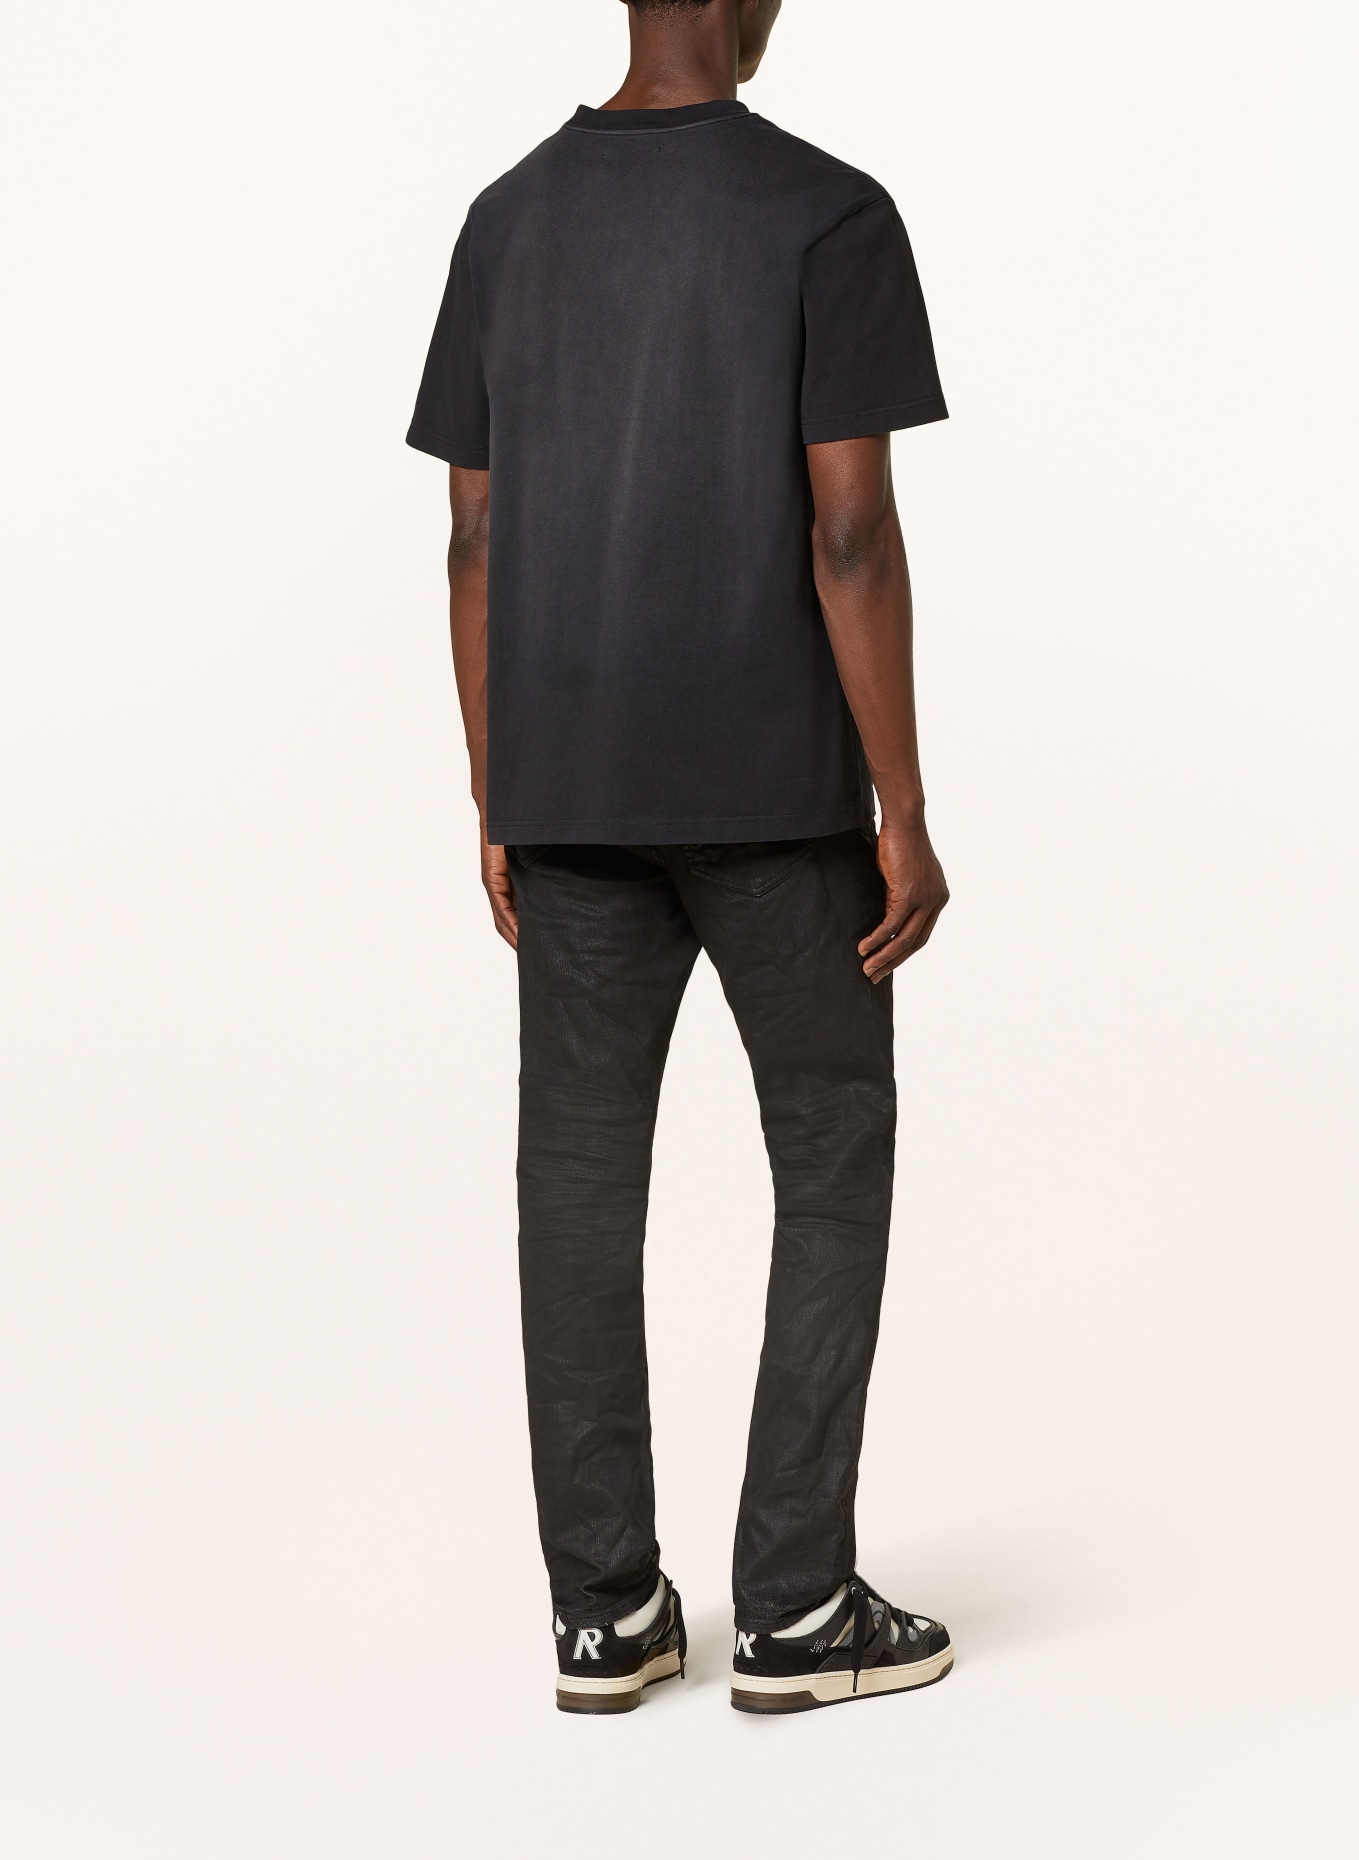 PURPLE BRAND T-shirt, Color: BLACK (Image 3)